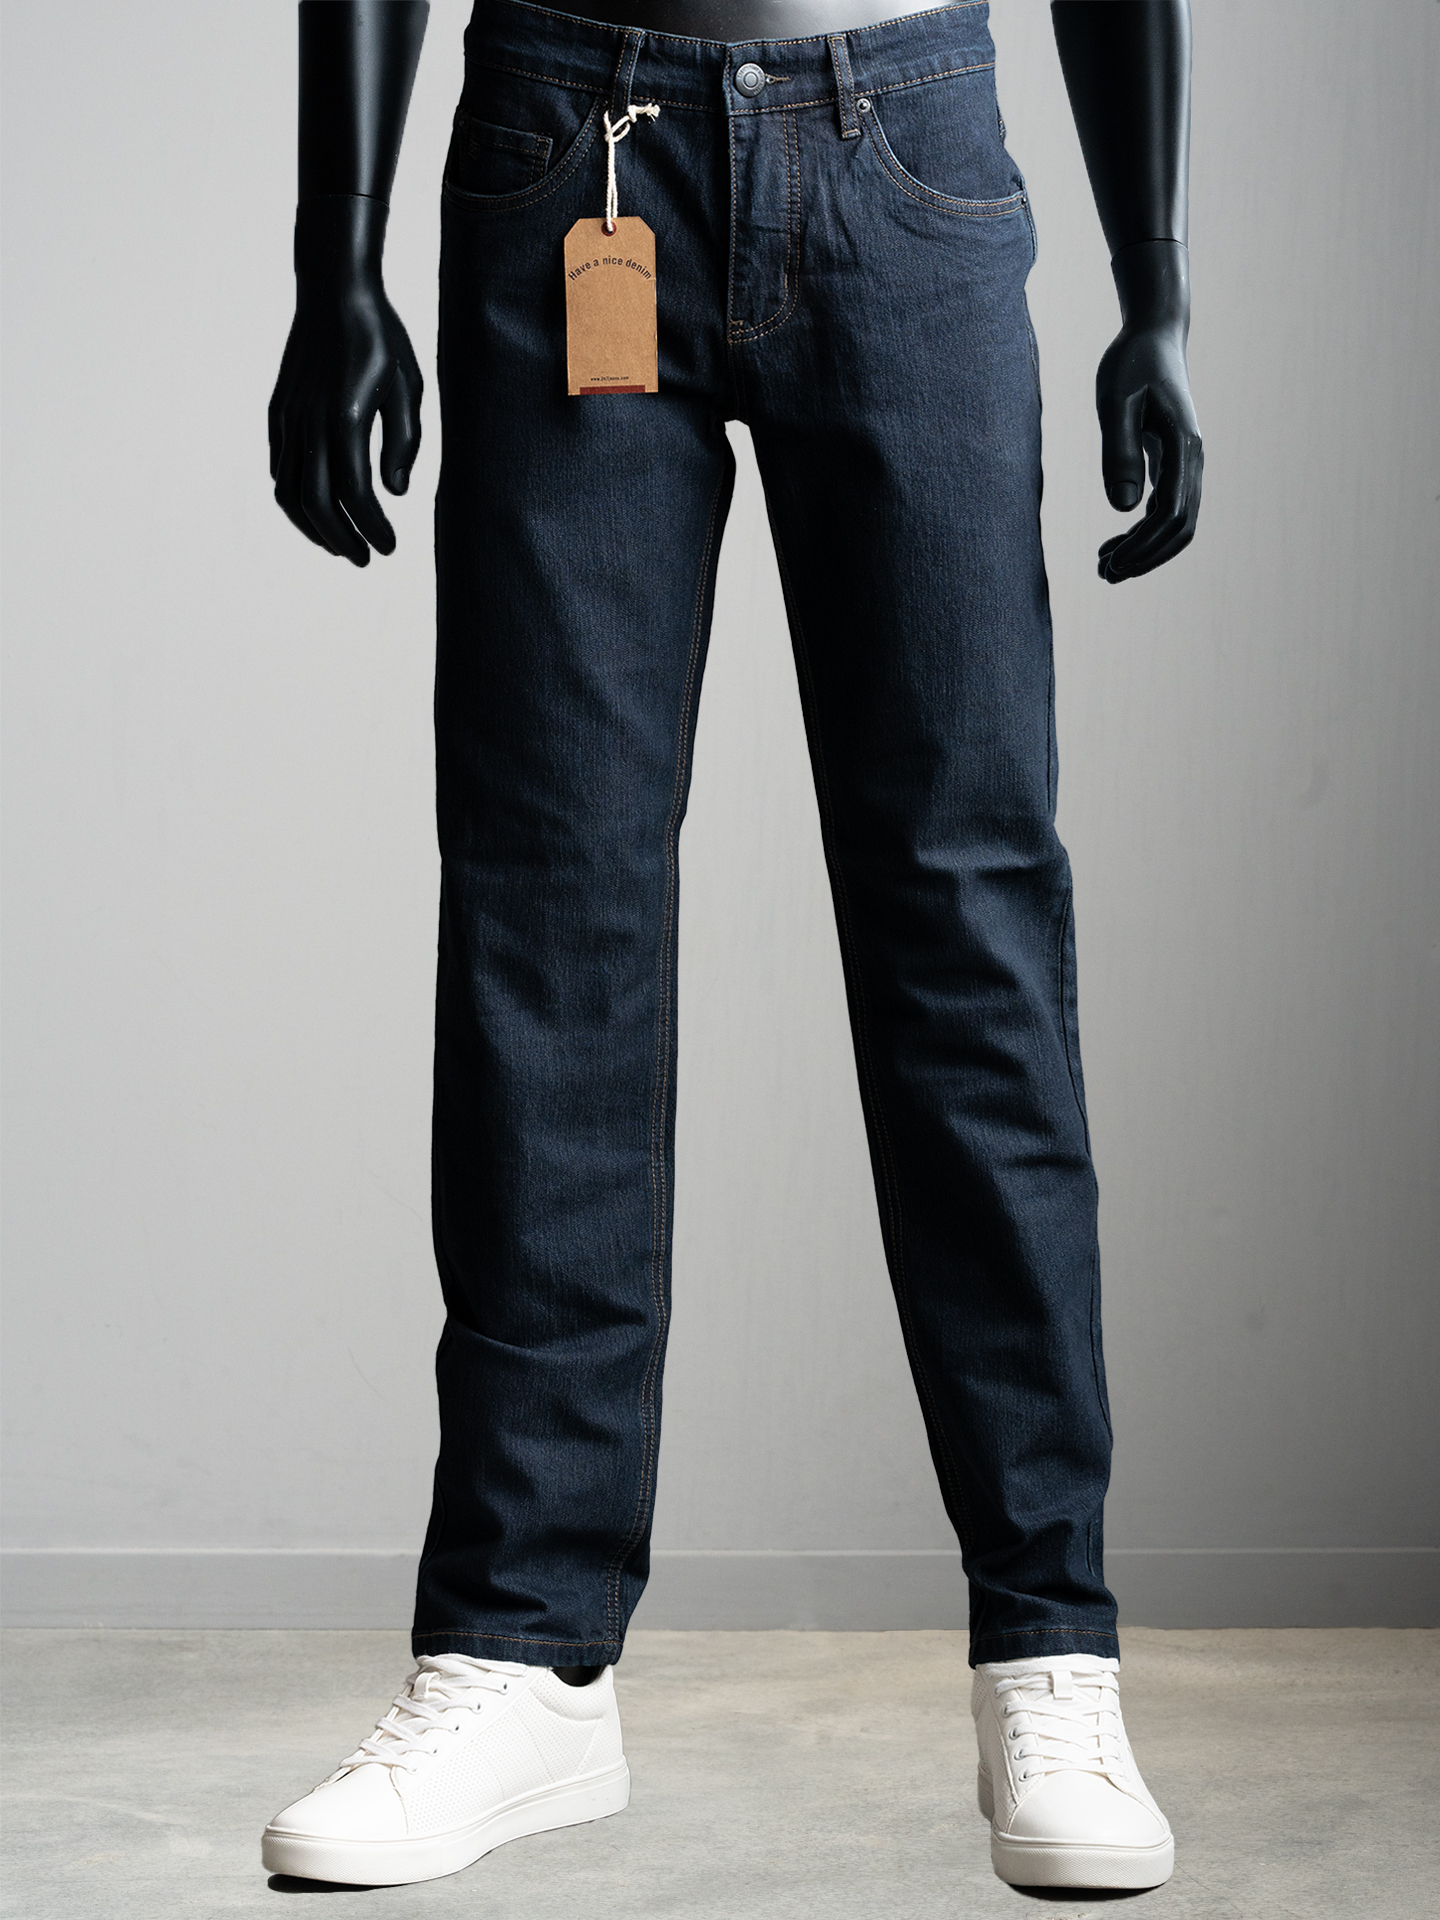 Vermaken Persoonlijk Blind vertrouwen Regular fit jeans heren | 247Jeans.com